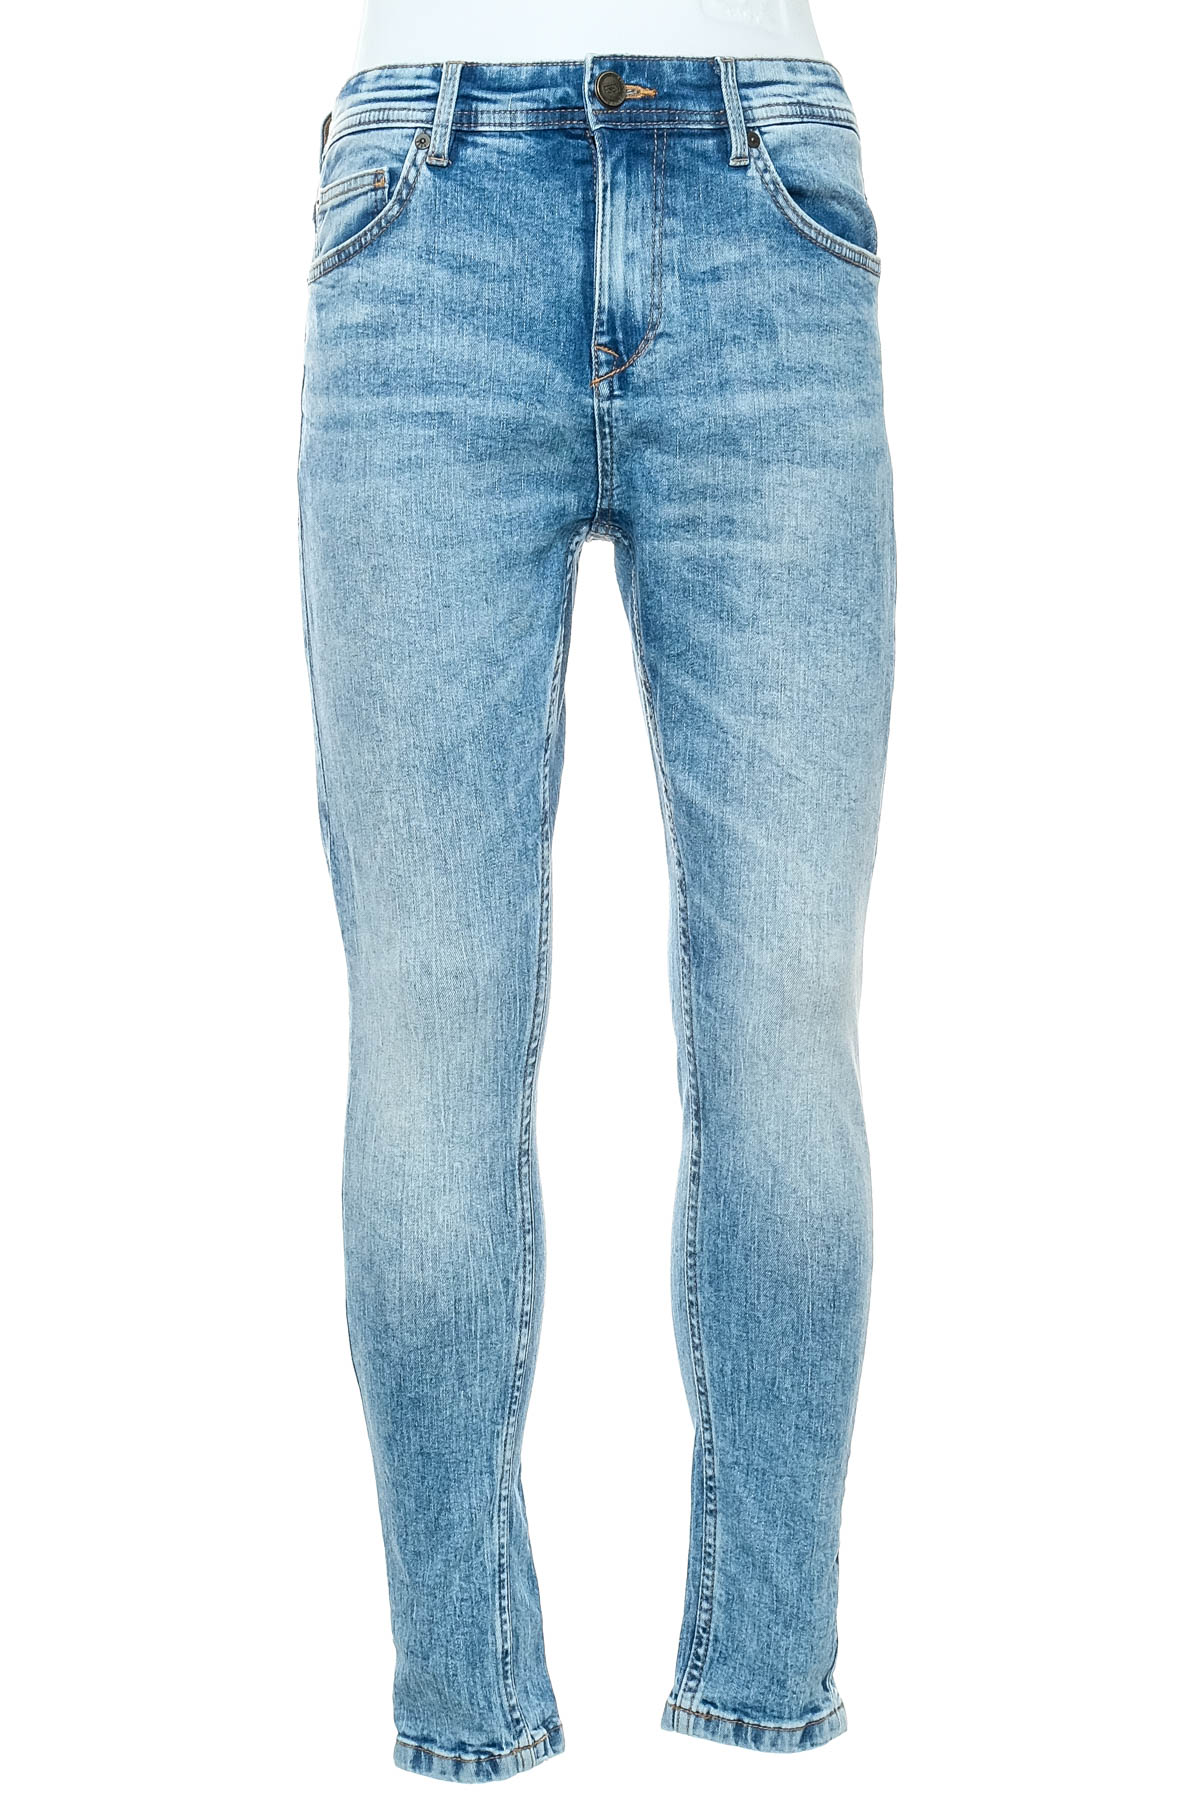 Men's jeans - FSBN - 0